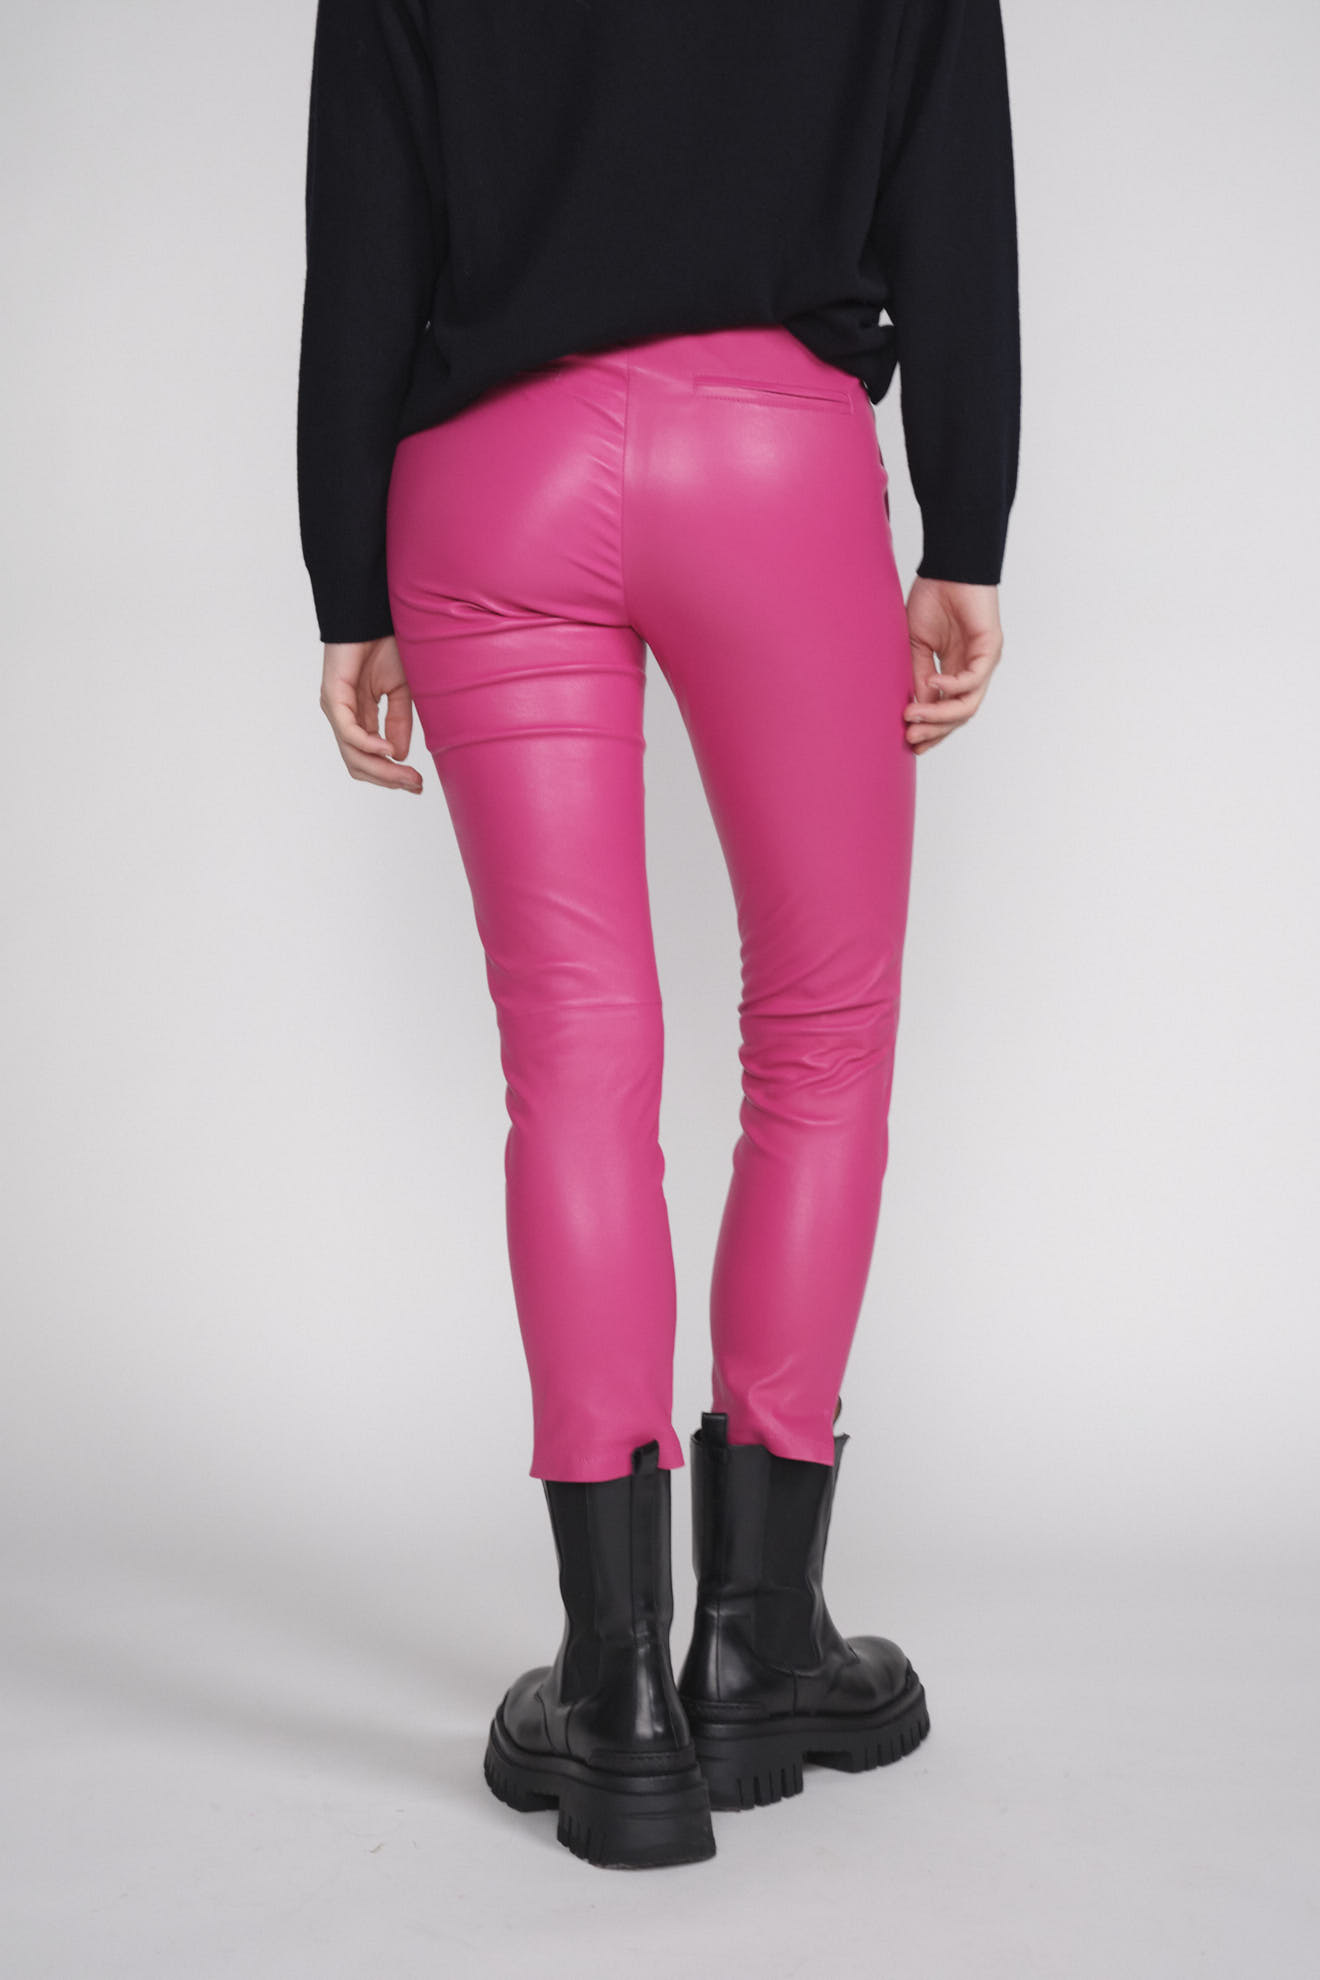 Arma Provence - Pantalones de corte bootcut en piel de cordero rosa 38